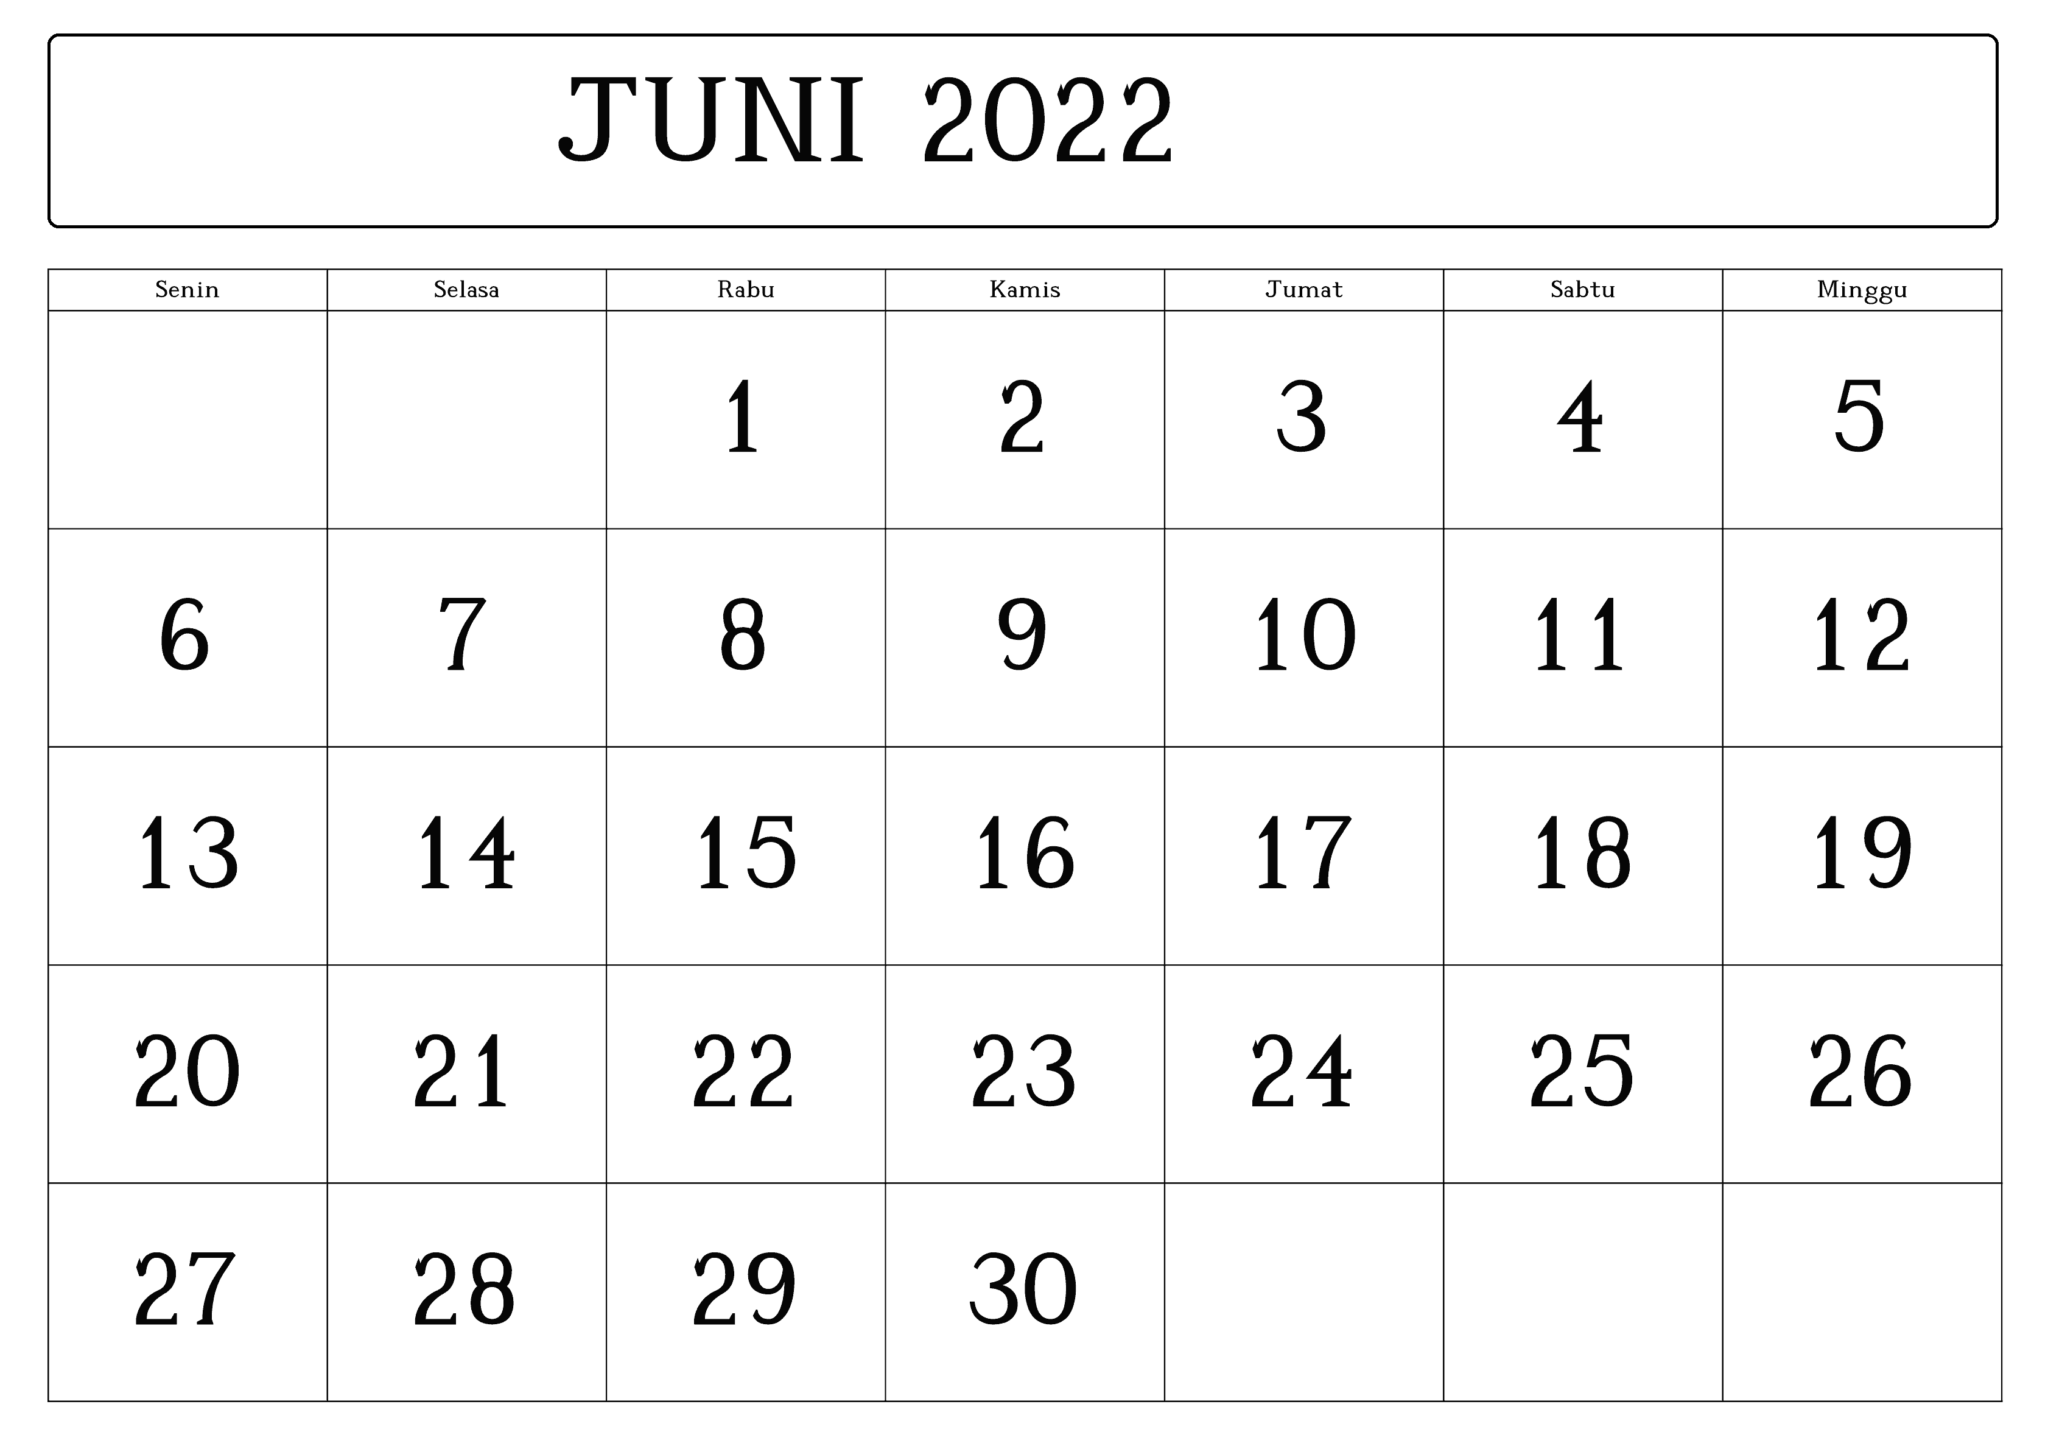 2022 Kalender Juni Mit Feiertagen